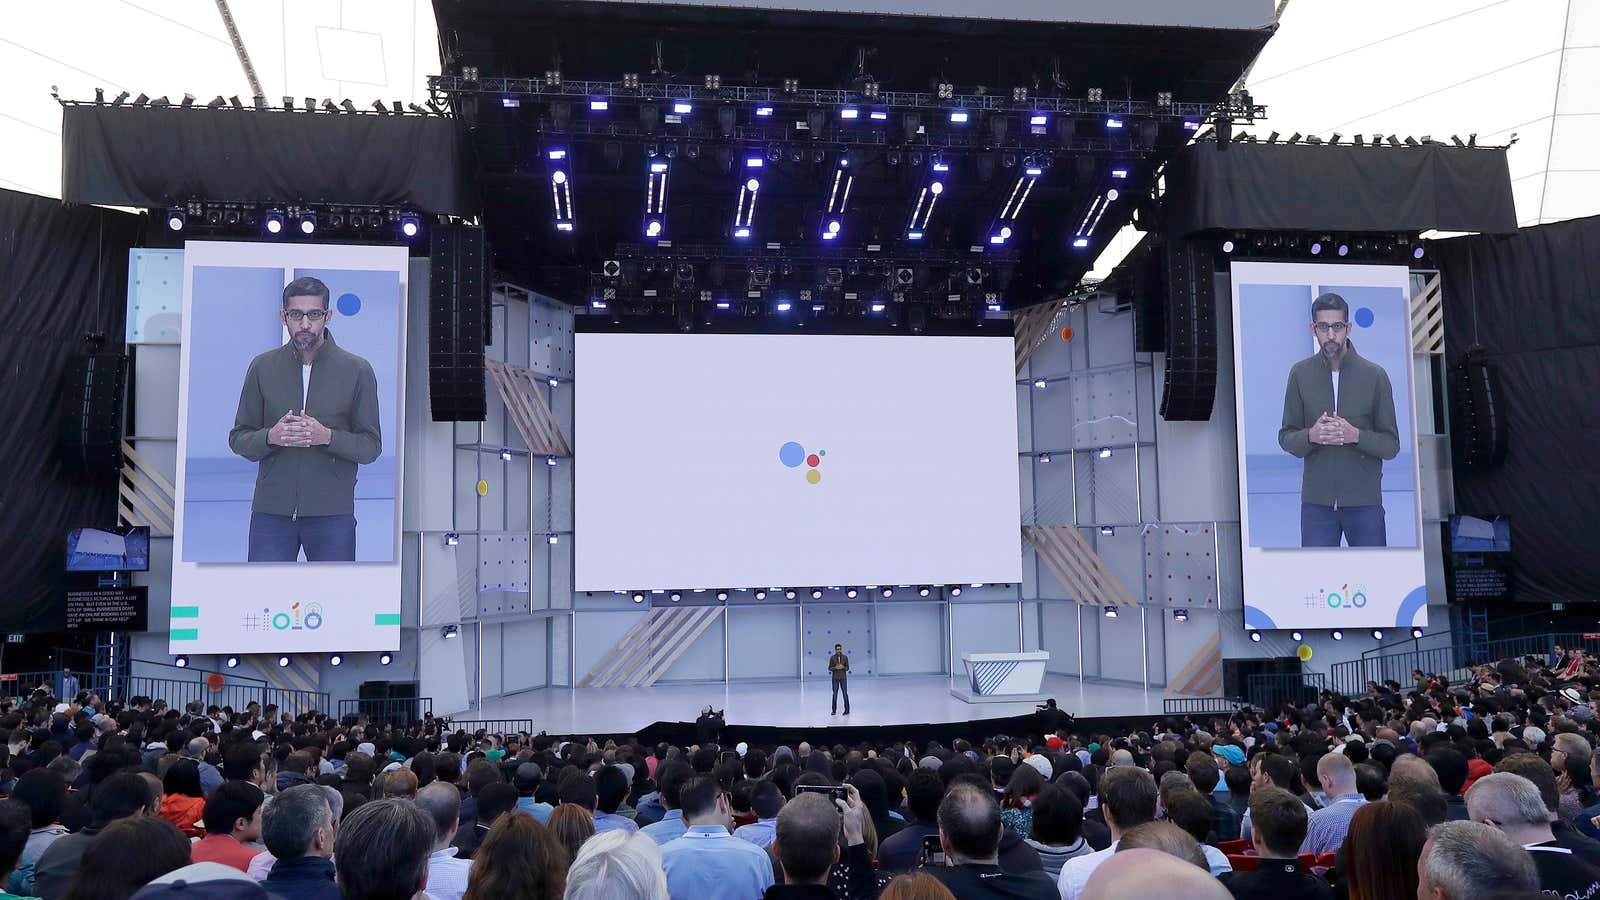 Google CEO Sundar Pichai kicking off I/O 2018.